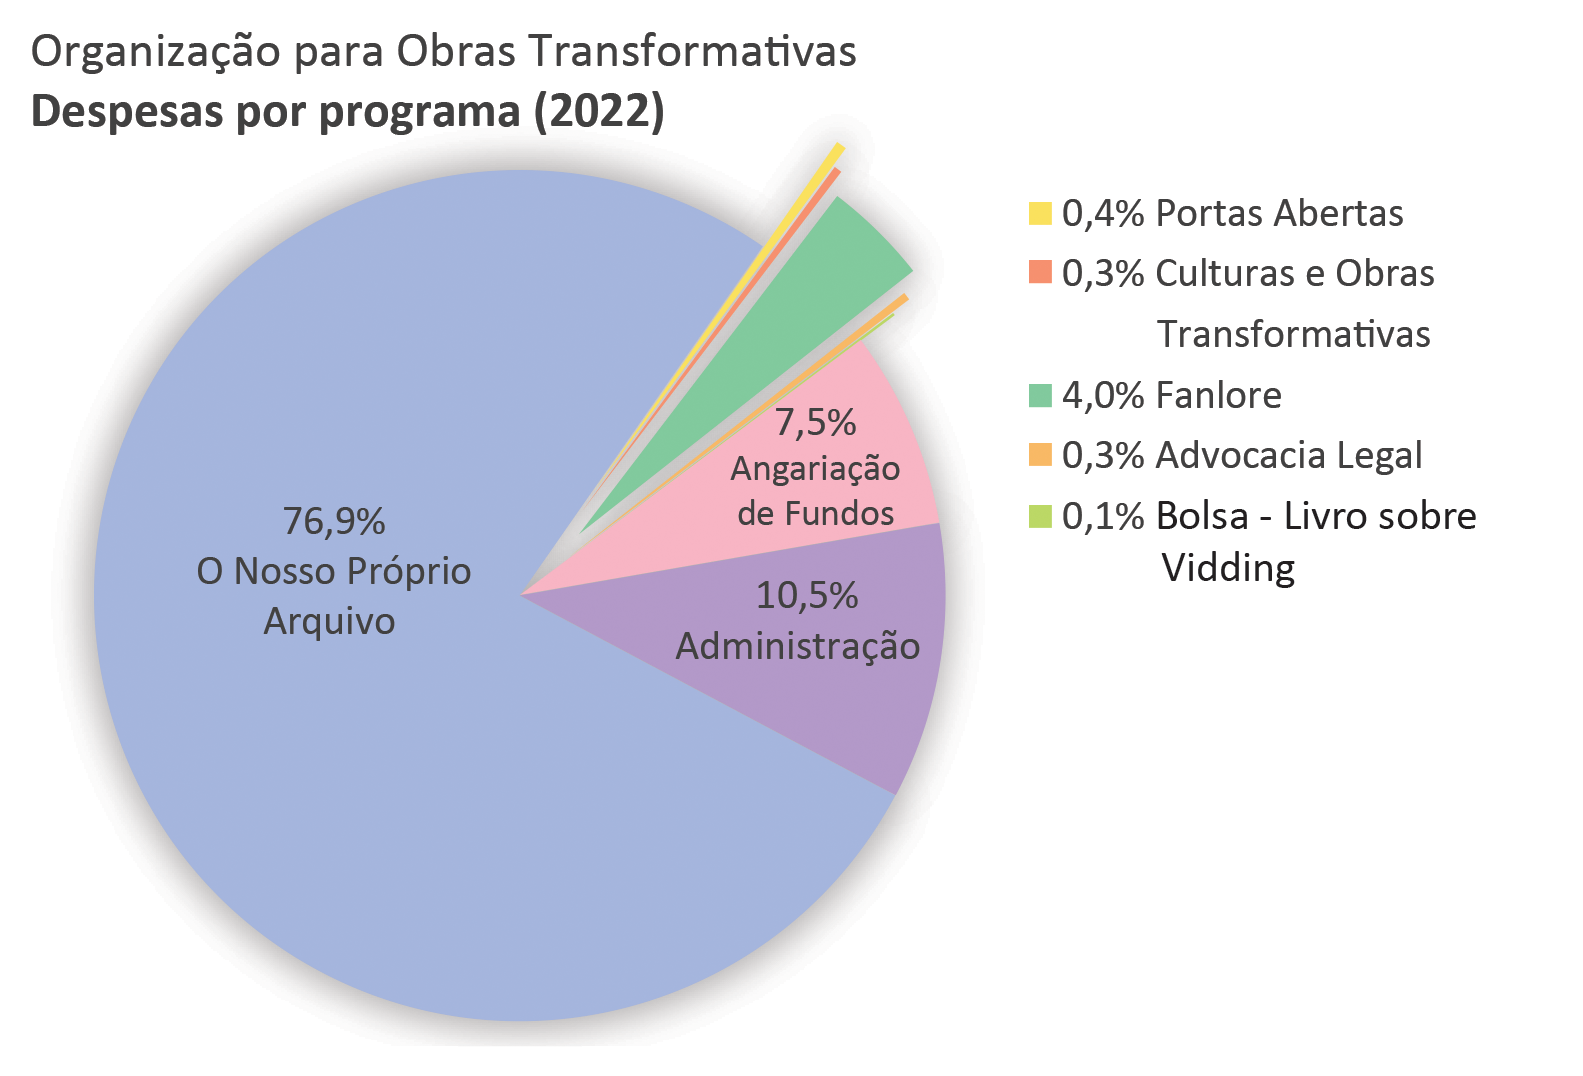 Despesas por programa: O Nosso Próprio Arquivo (AO3): 76,9%. Portas Abertas: 0,4%. Culturas e Obras Transformativas: 0,3%. Fanlore: 4,0%. Advocacia Legal: 0,3%. Bolsa - Livro sobre Vidding: 0,1%. Administração: 10,5%. Angariação de Fundos: 7,5%.